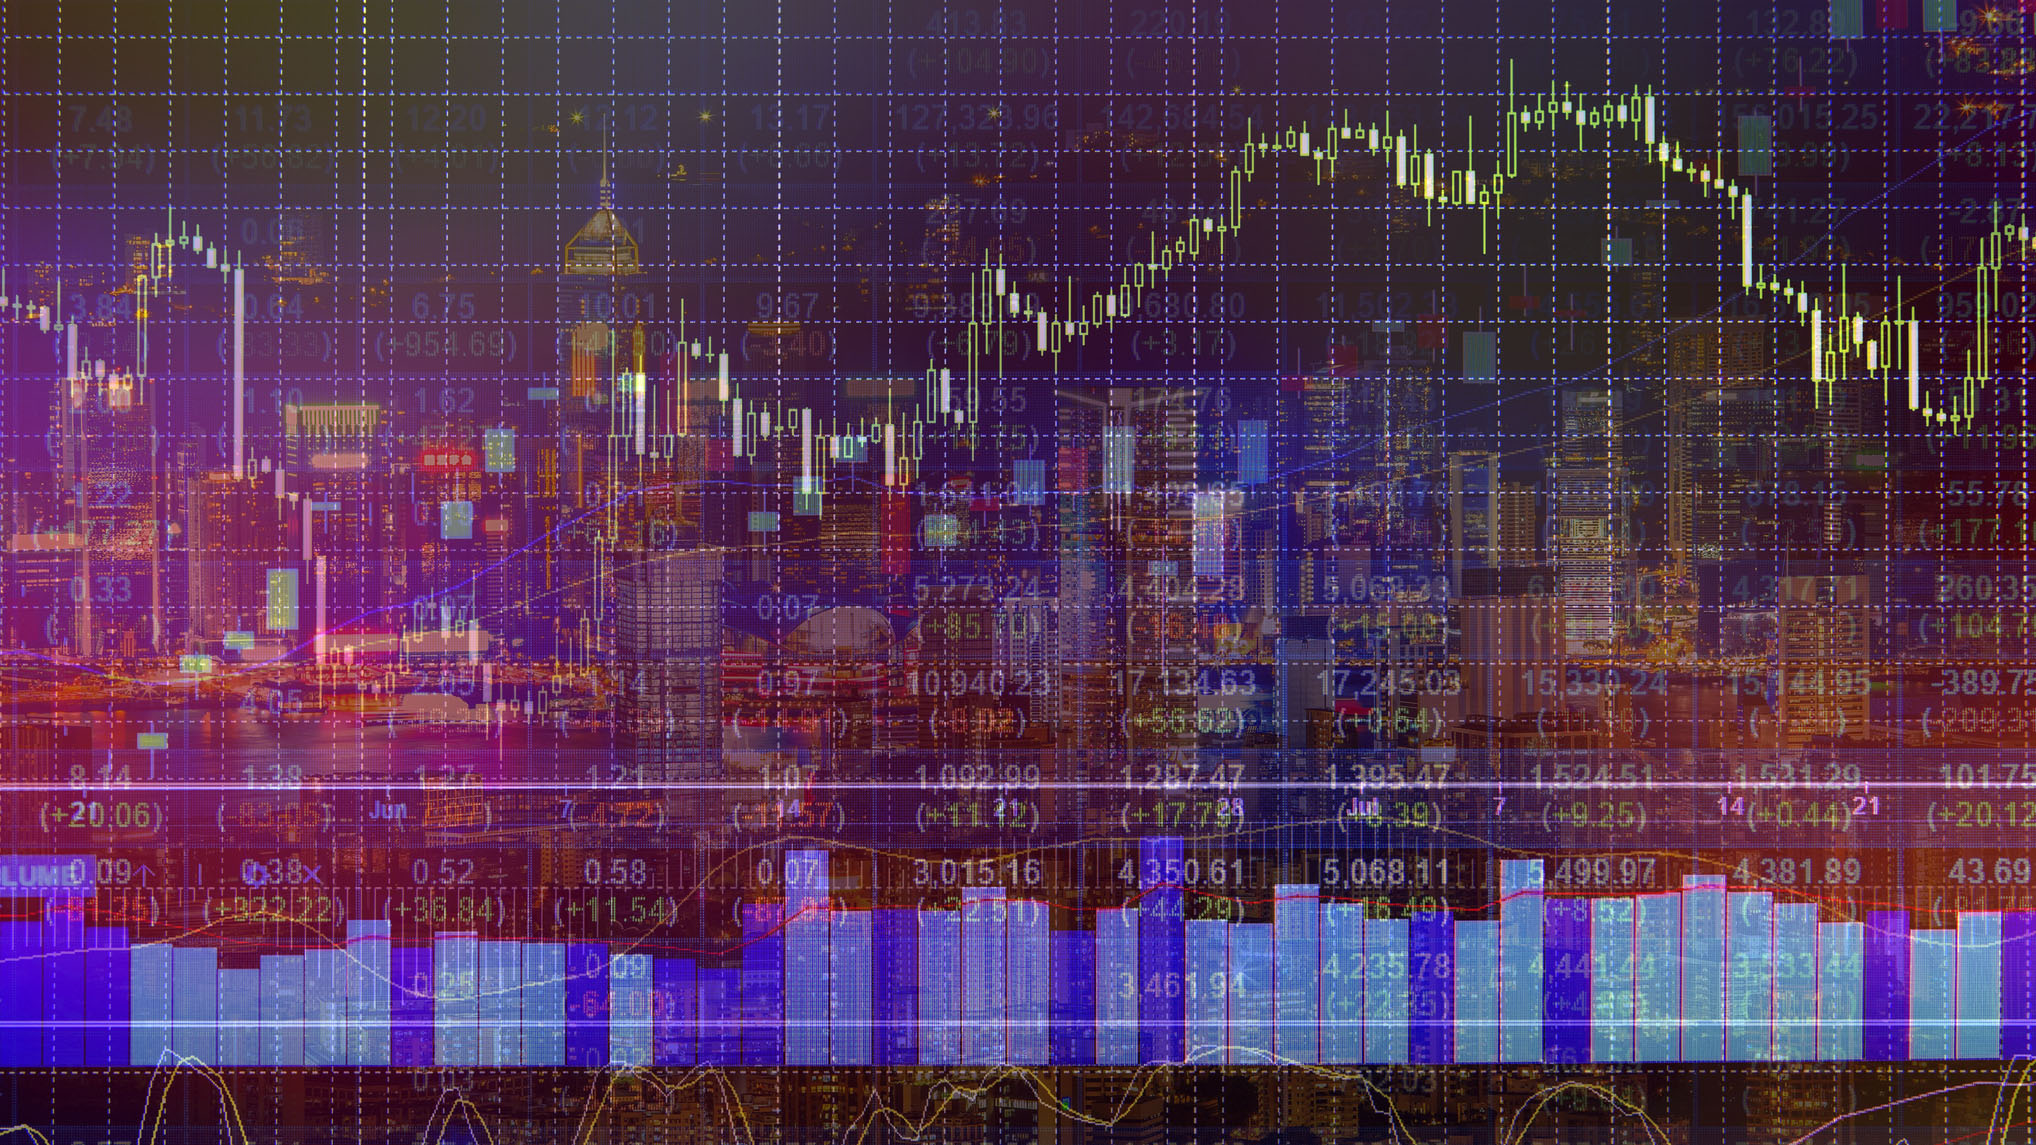 Hong Kong markets and charts